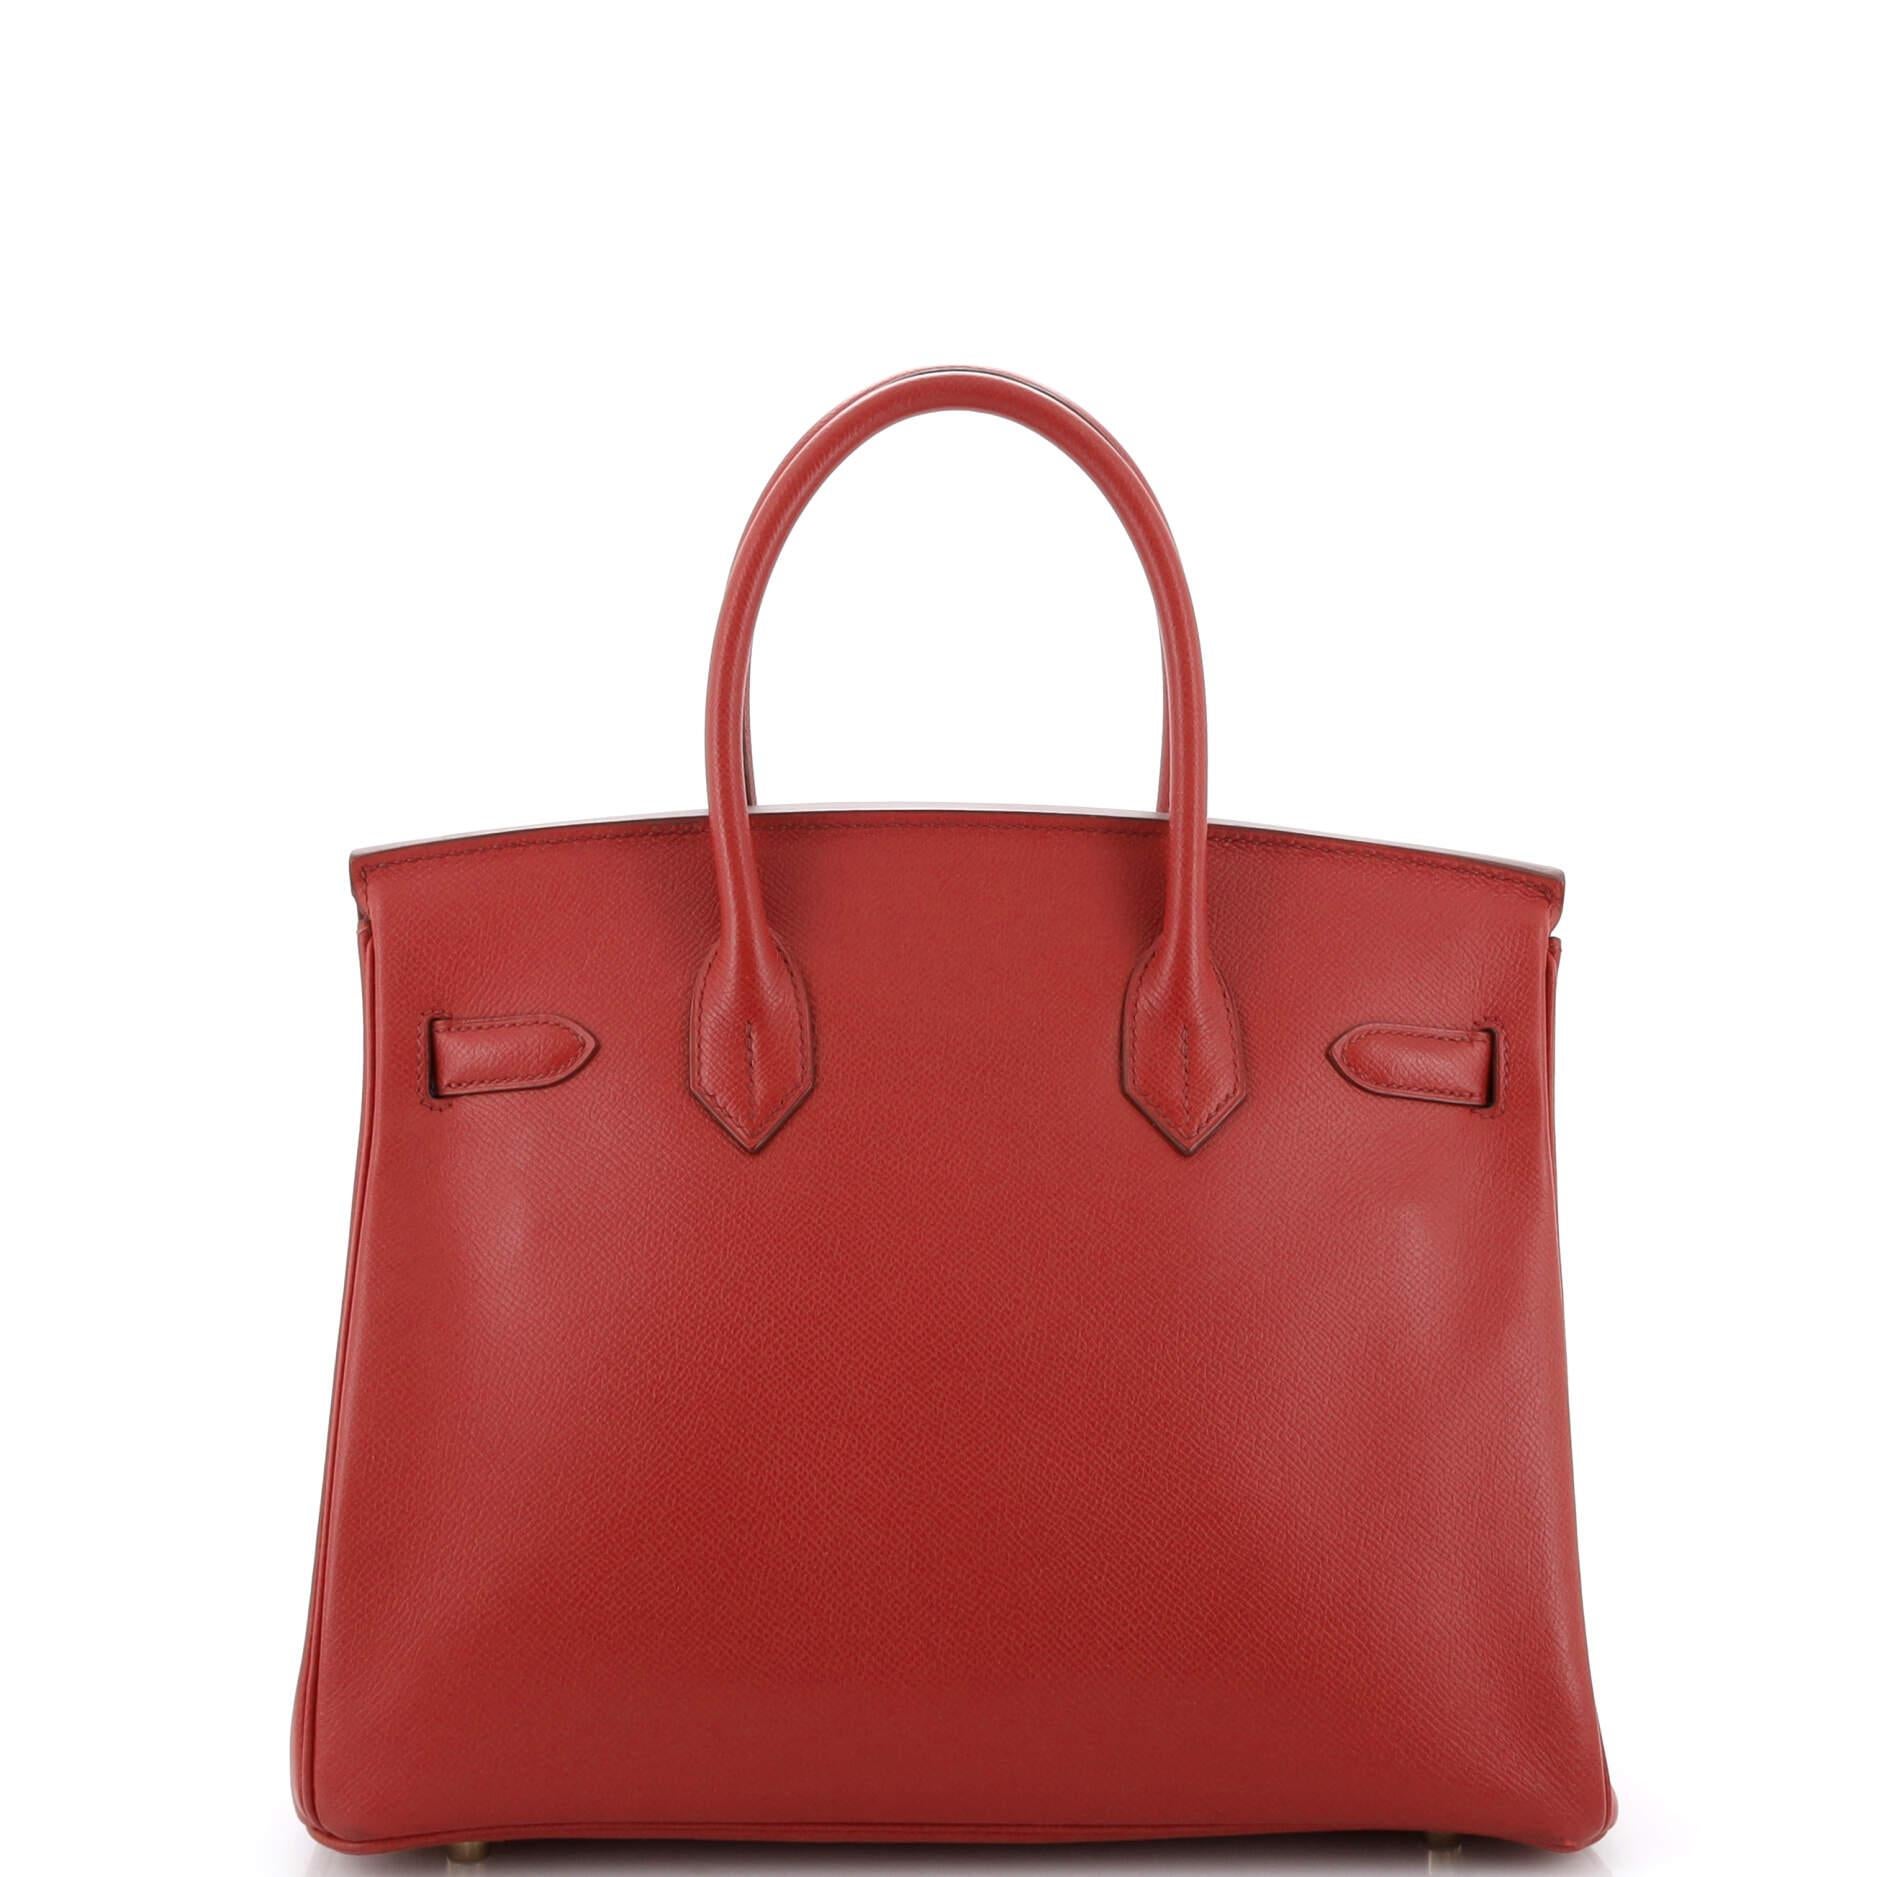 Women's or Men's Hermes Birkin Handbag Rouge Garance Epsom with Gold Hardware 30